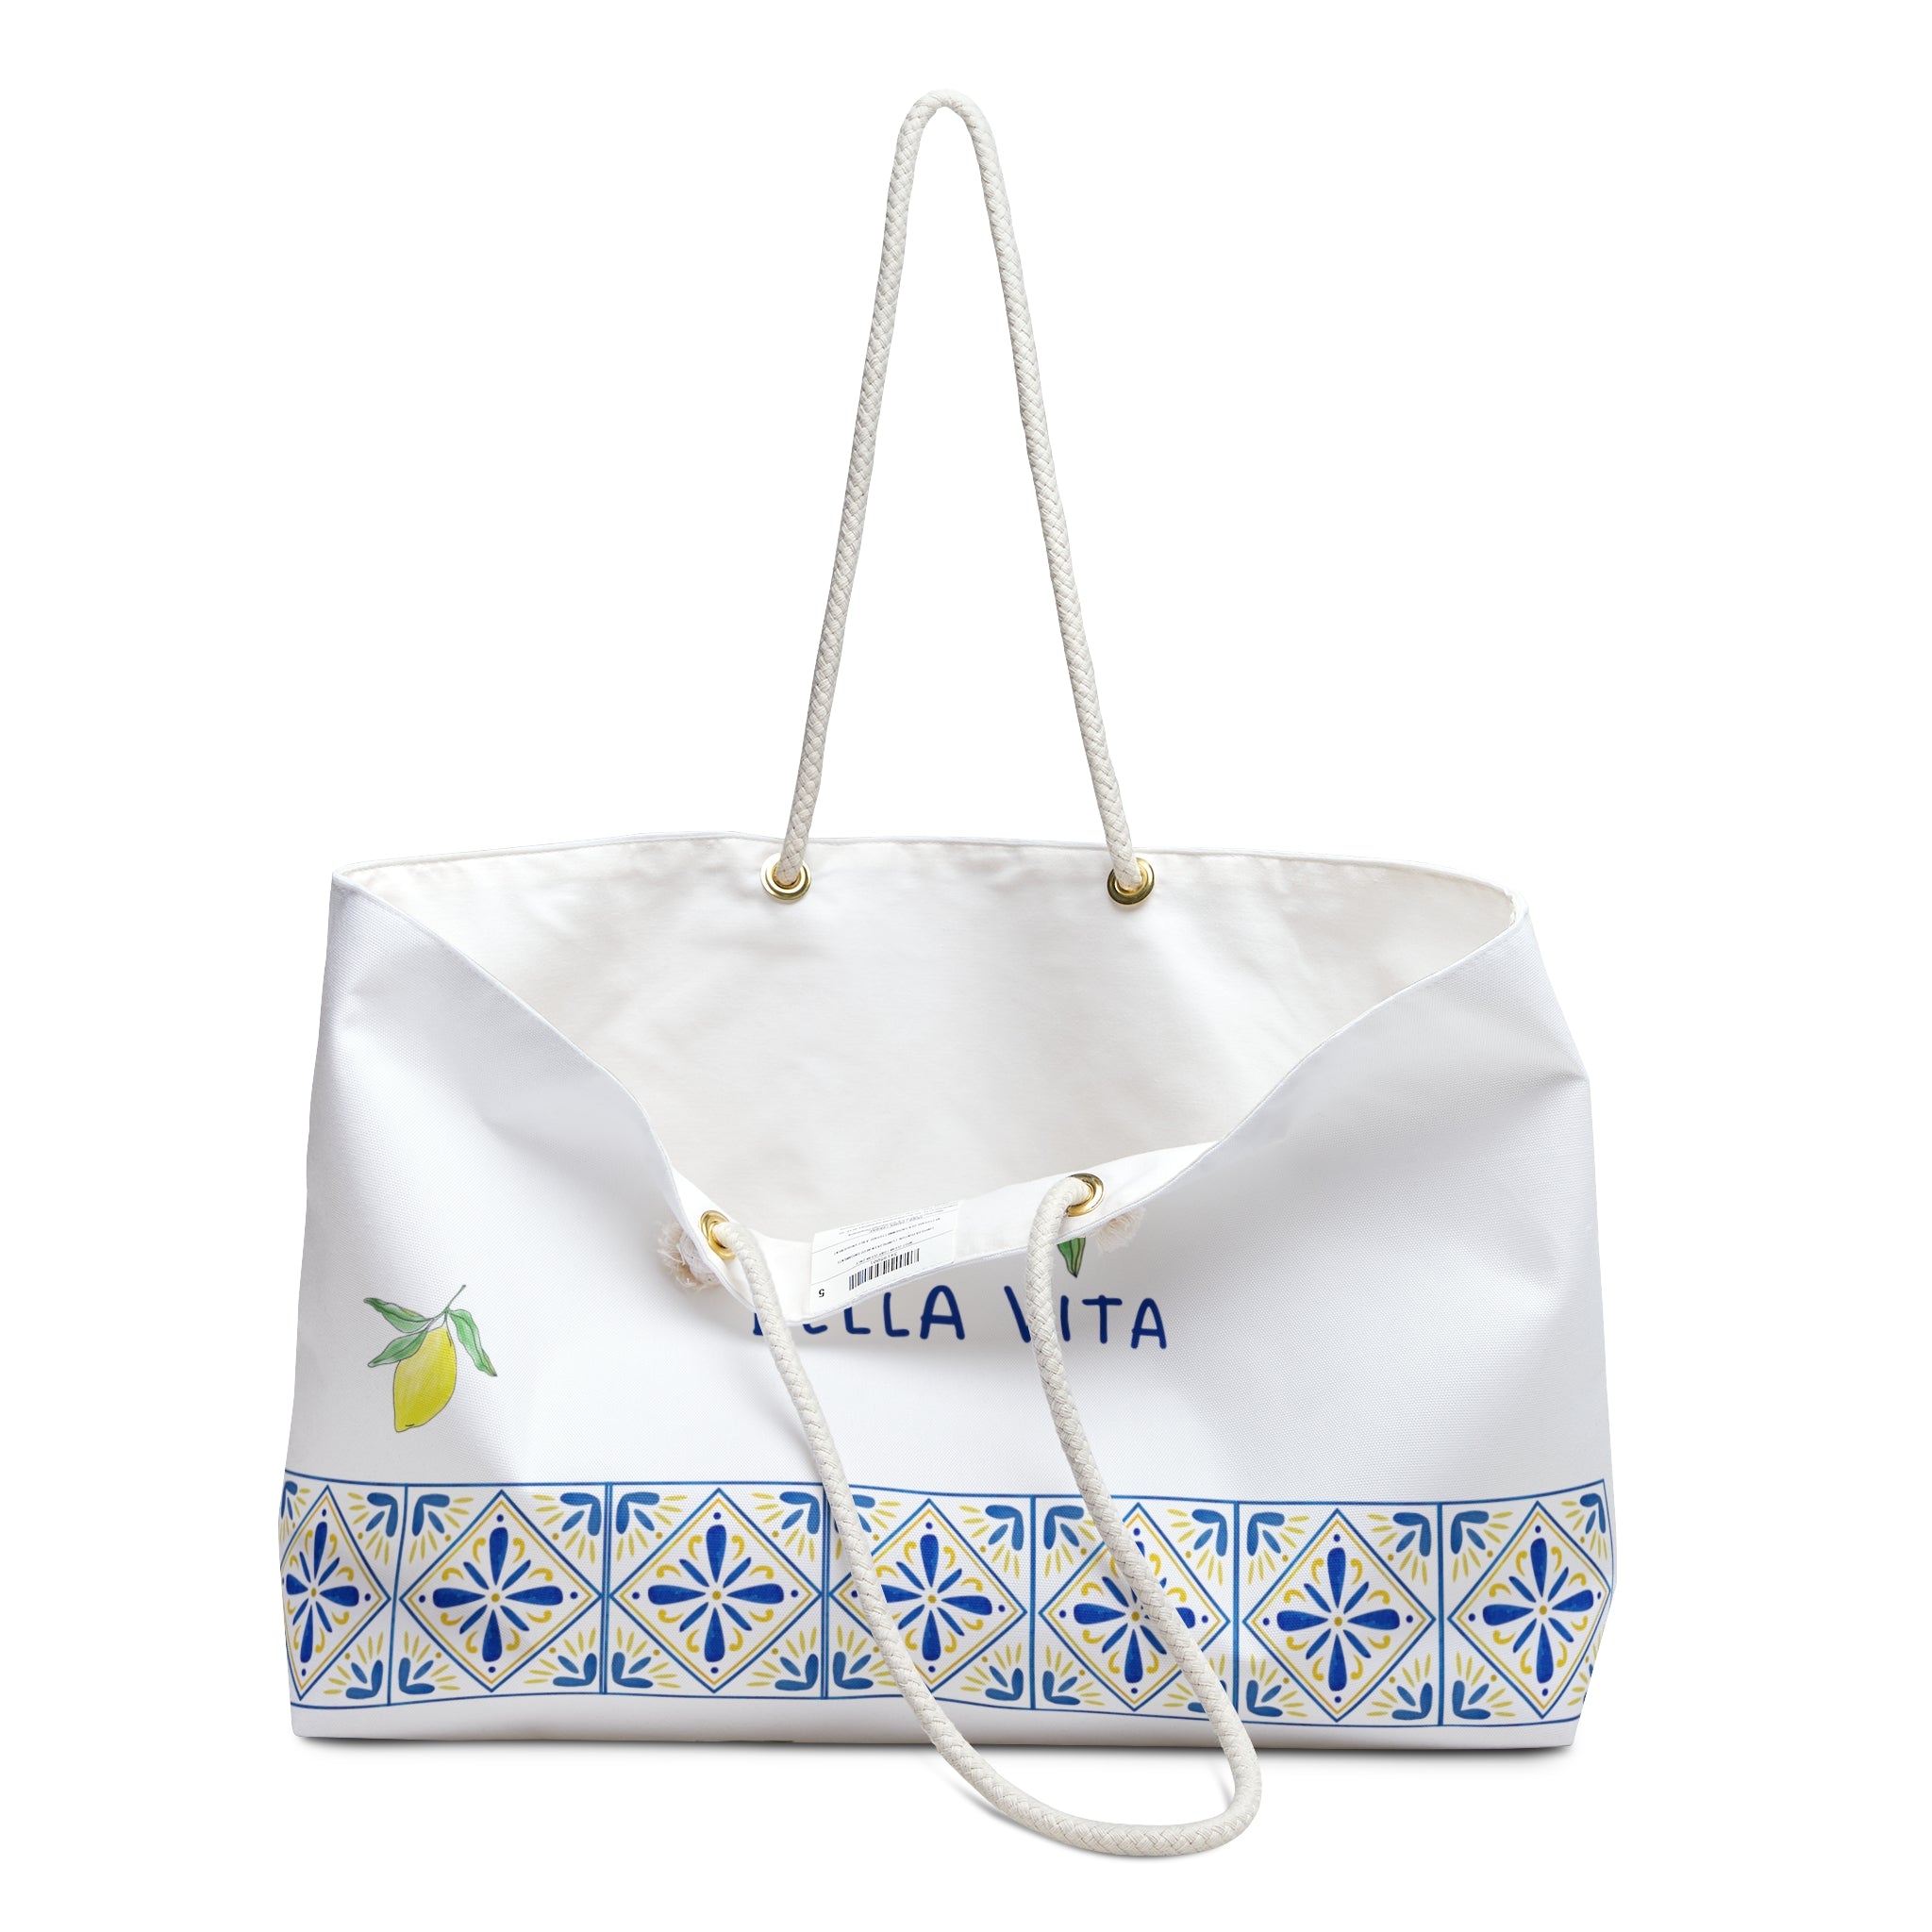 Bella Vita - Weekender Bag